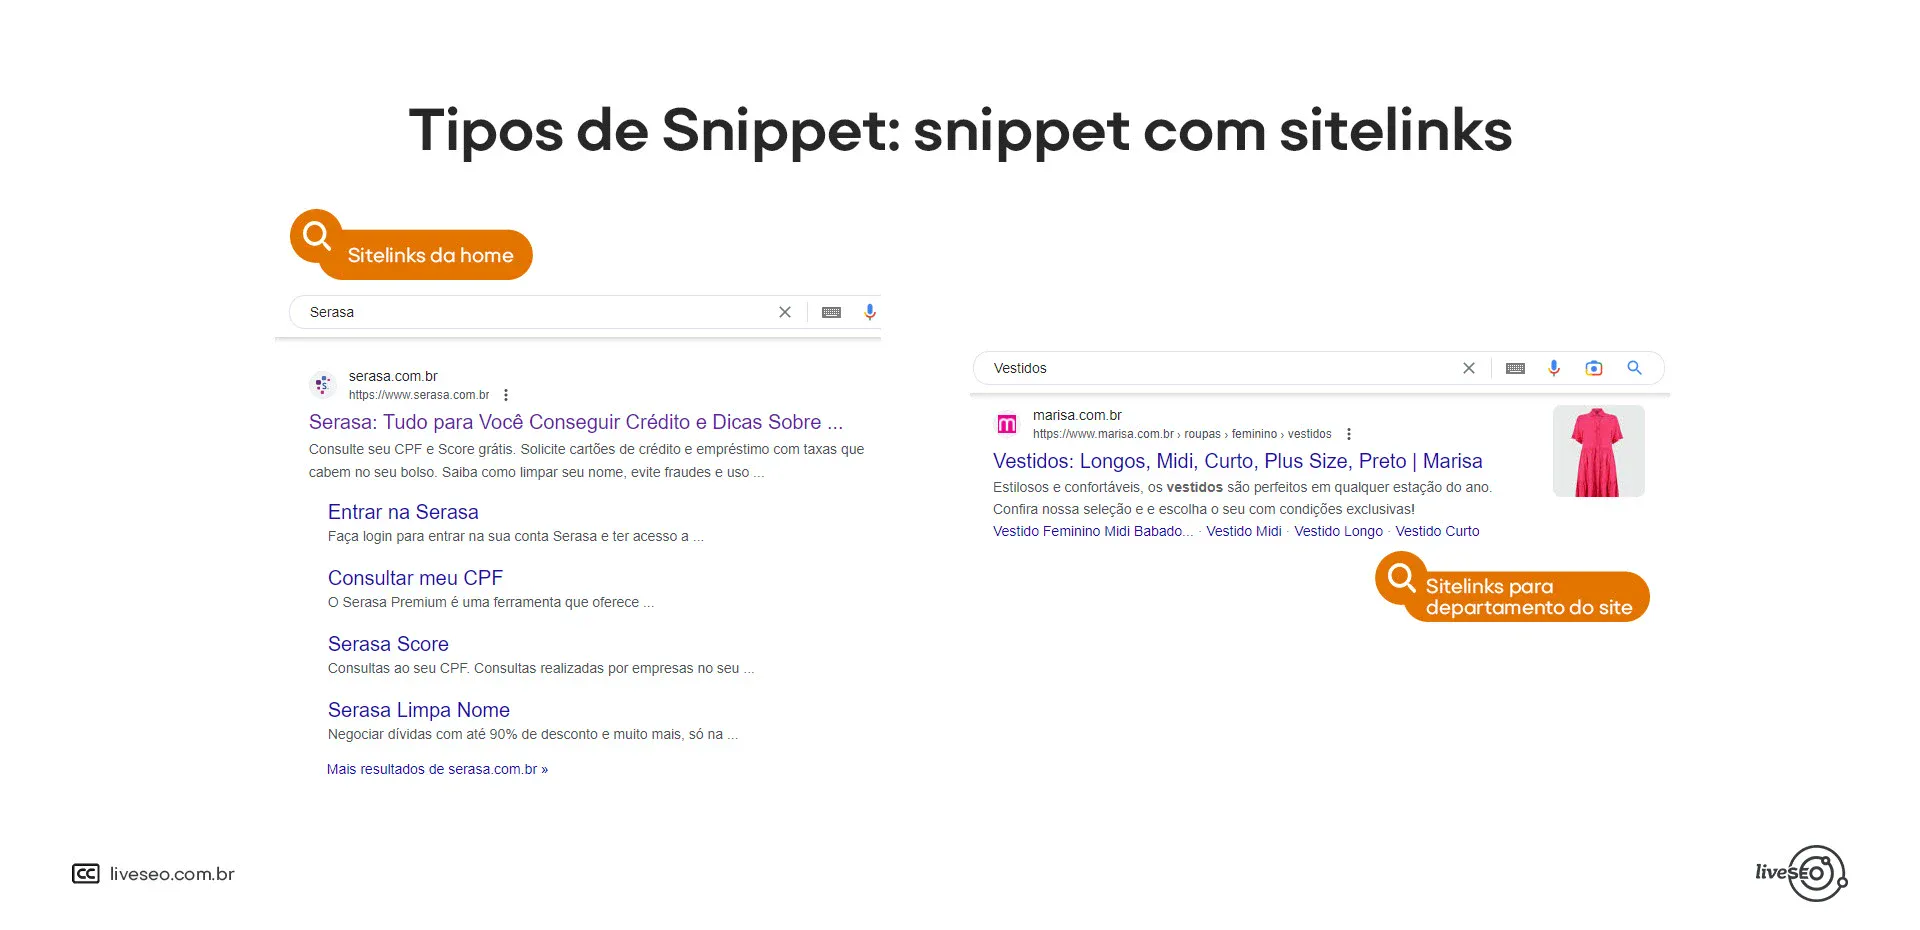 Exemplos de snippet com sitelinks retirados do Google.